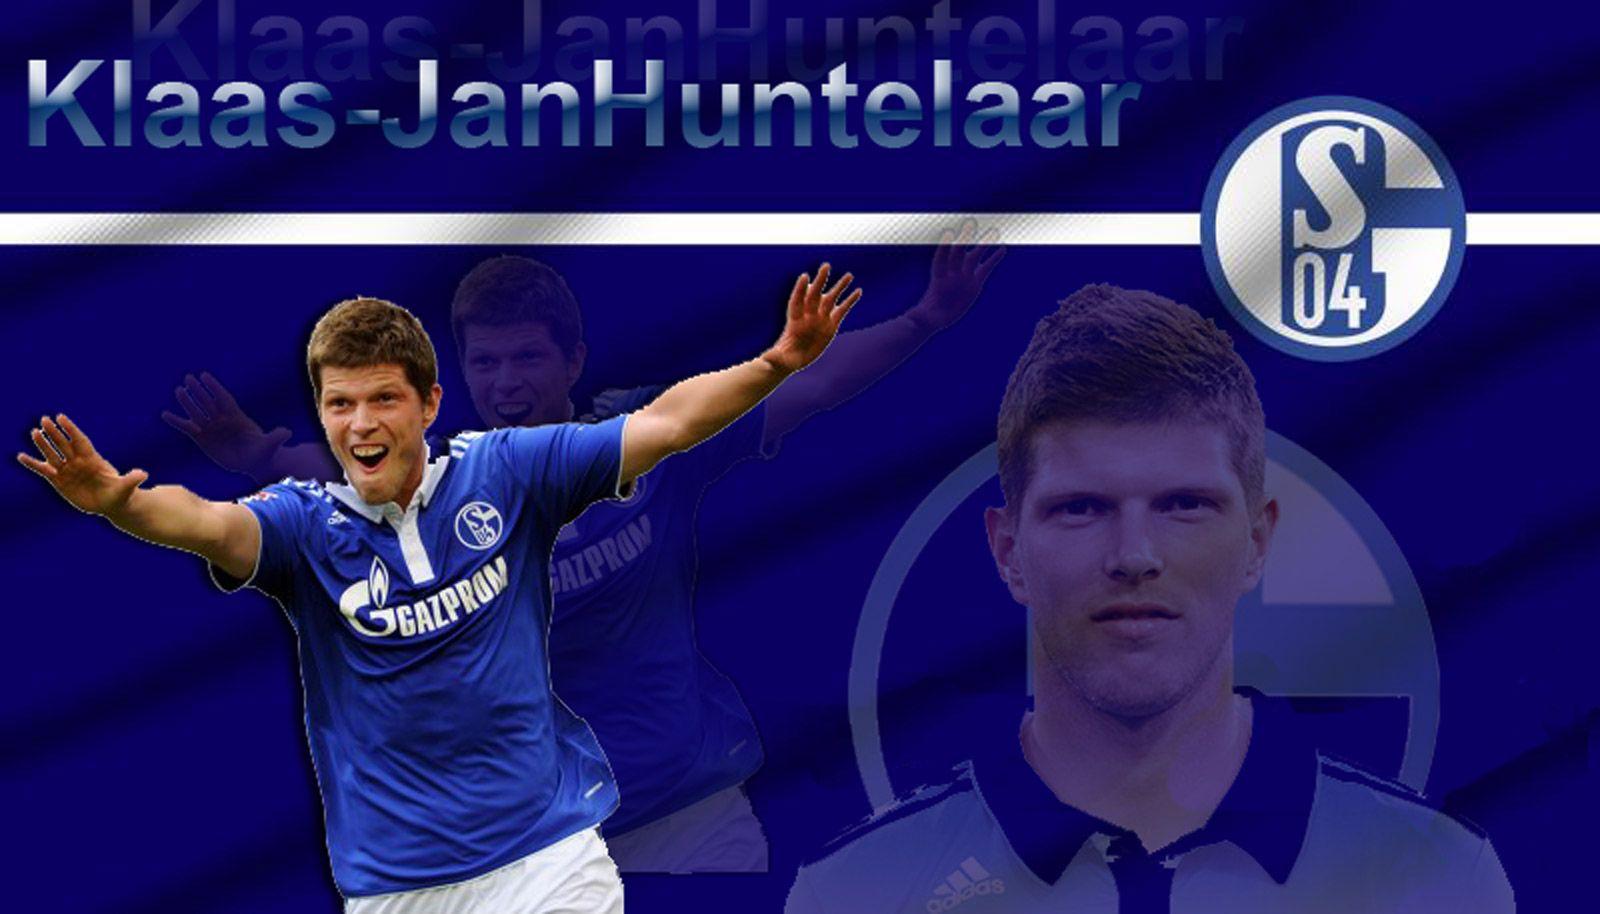 top footballer wallpaper: Klaas Jan Huntelaar Schalke 04 wallpaper